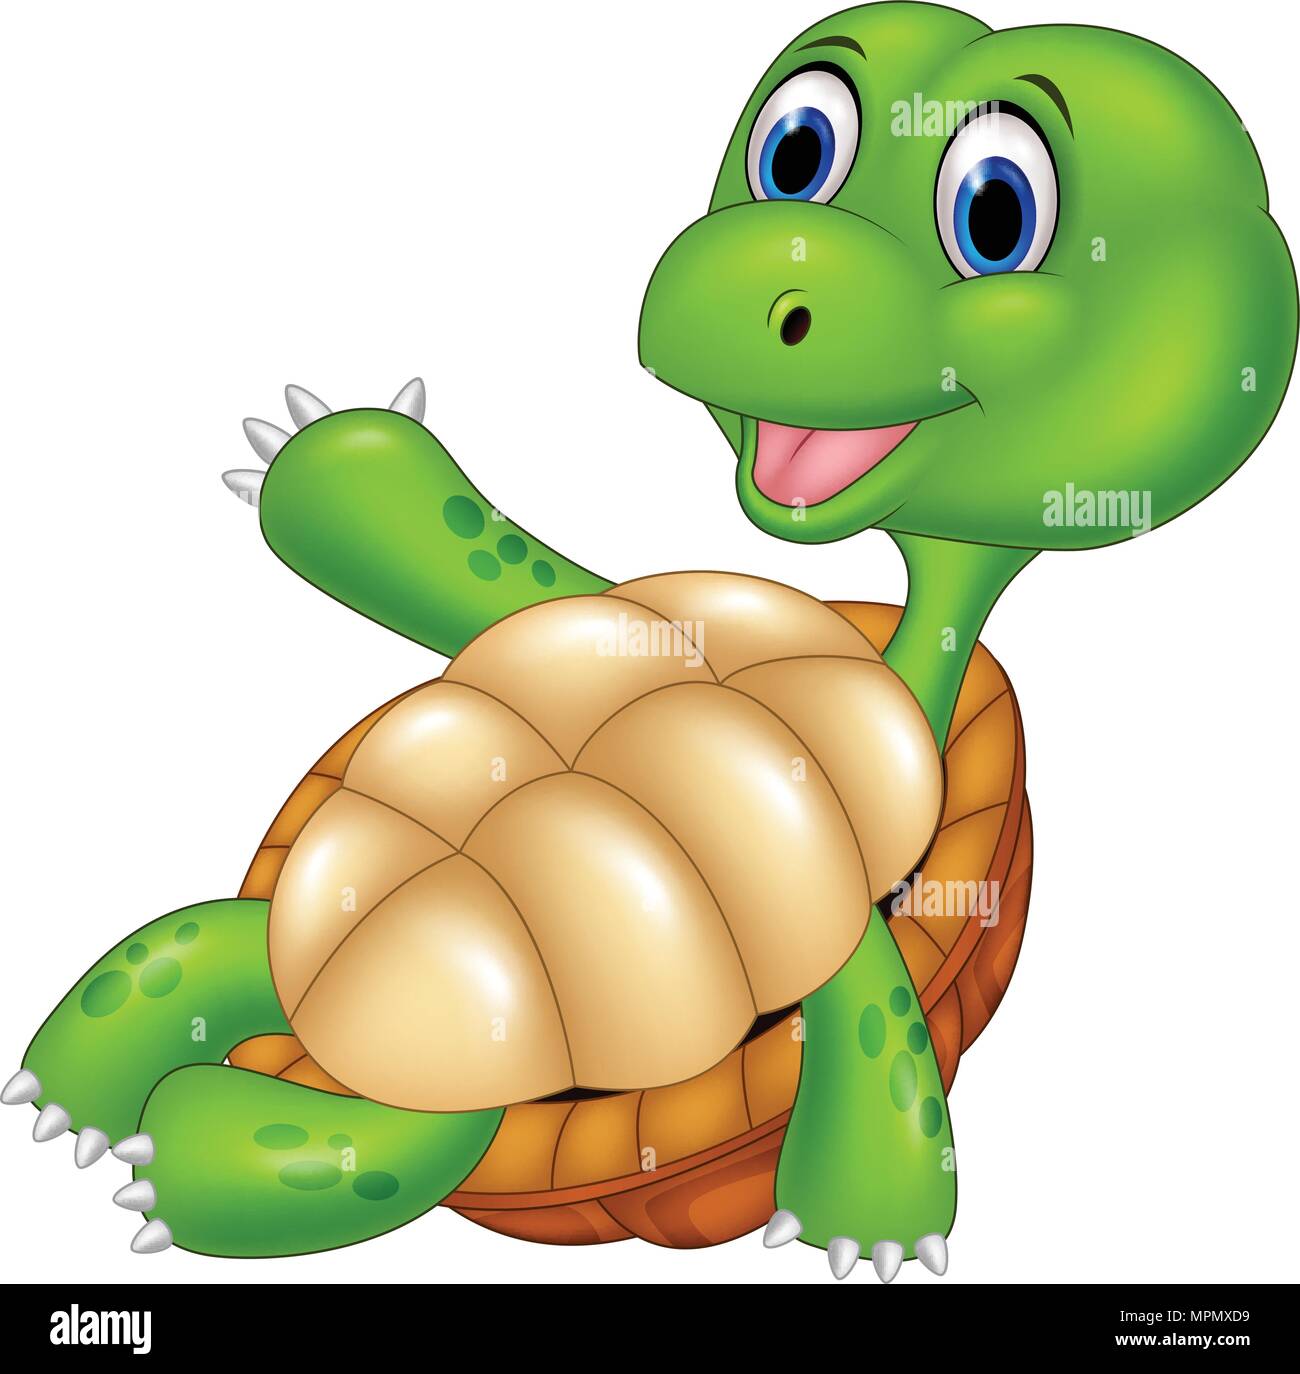 Cartoon happy turtle relaxing Stock Vector Image & Art - Alamy